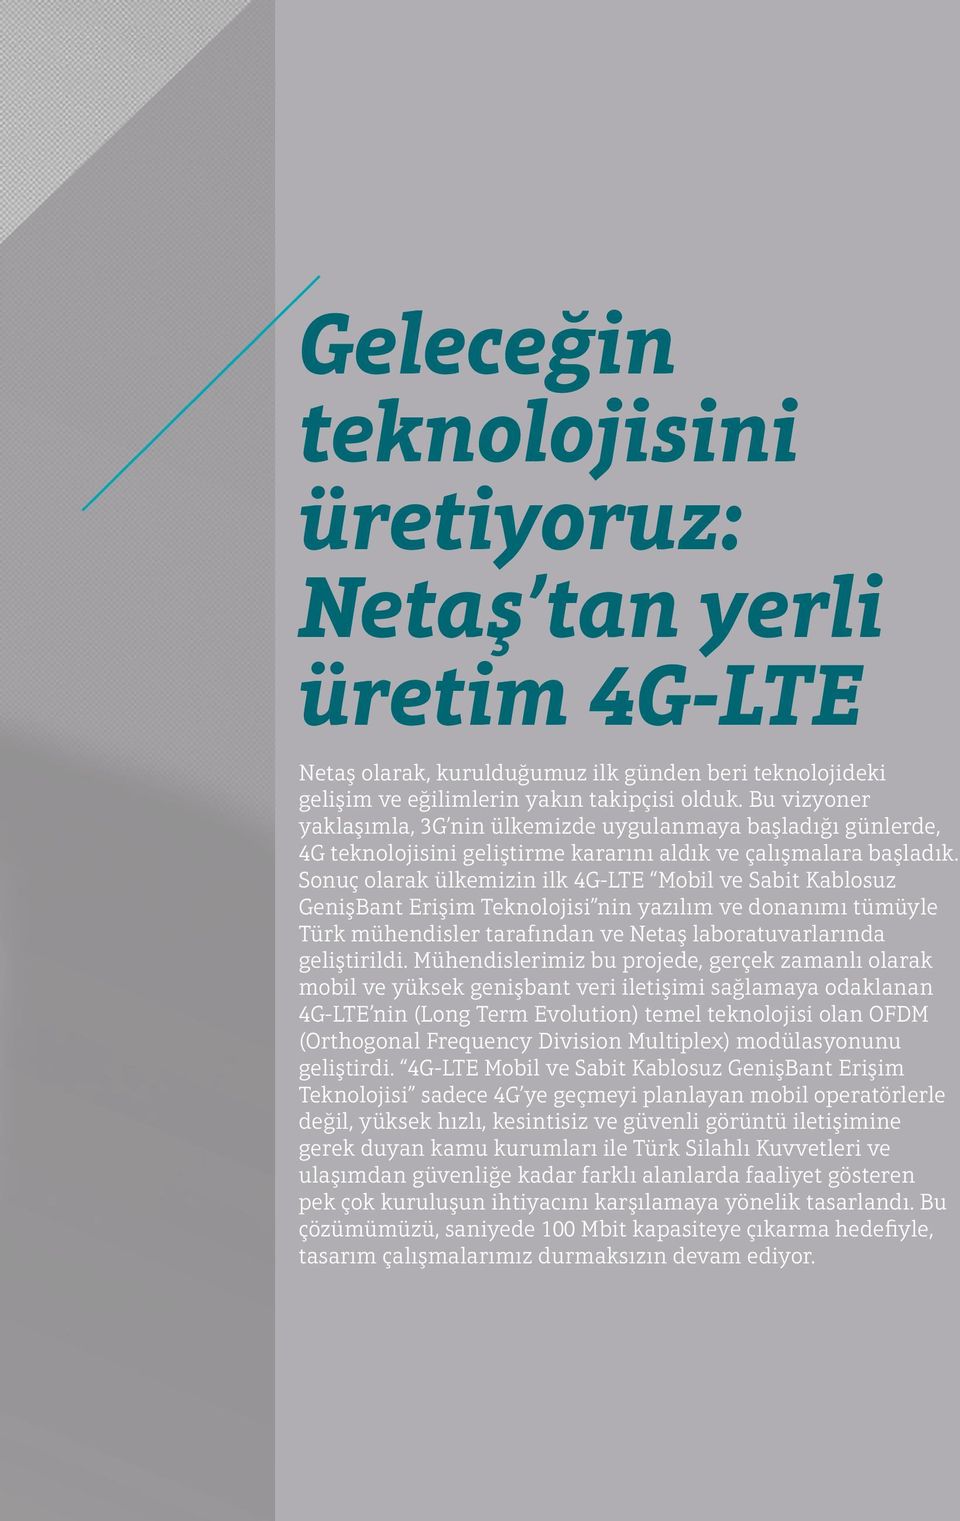 Sonuç olarak ülkemizin ilk 4G-LTE Mobil ve Sabit Kablosuz GenişBant Erişim Teknolojisi nin yazılım ve donanımı tümüyle Türk mühendisler tarafından ve Netaş laboratuvarlarında geliştirildi.